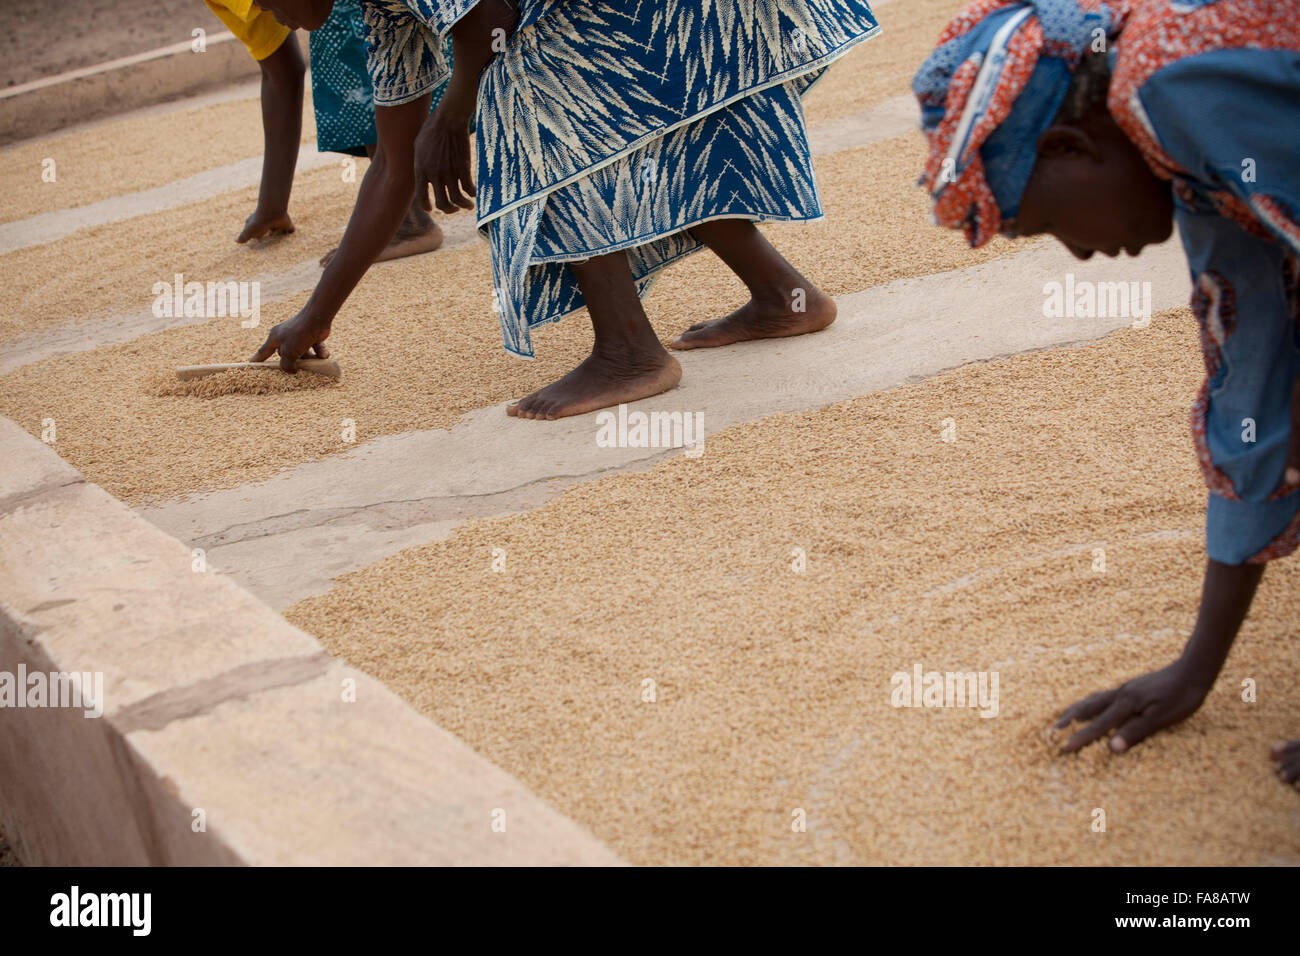 Le riz est séché avant d'être vendu à un groupe de femmes centre de traitement des demandes de la province du Sourou, au Burkina Faso. Banque D'Images